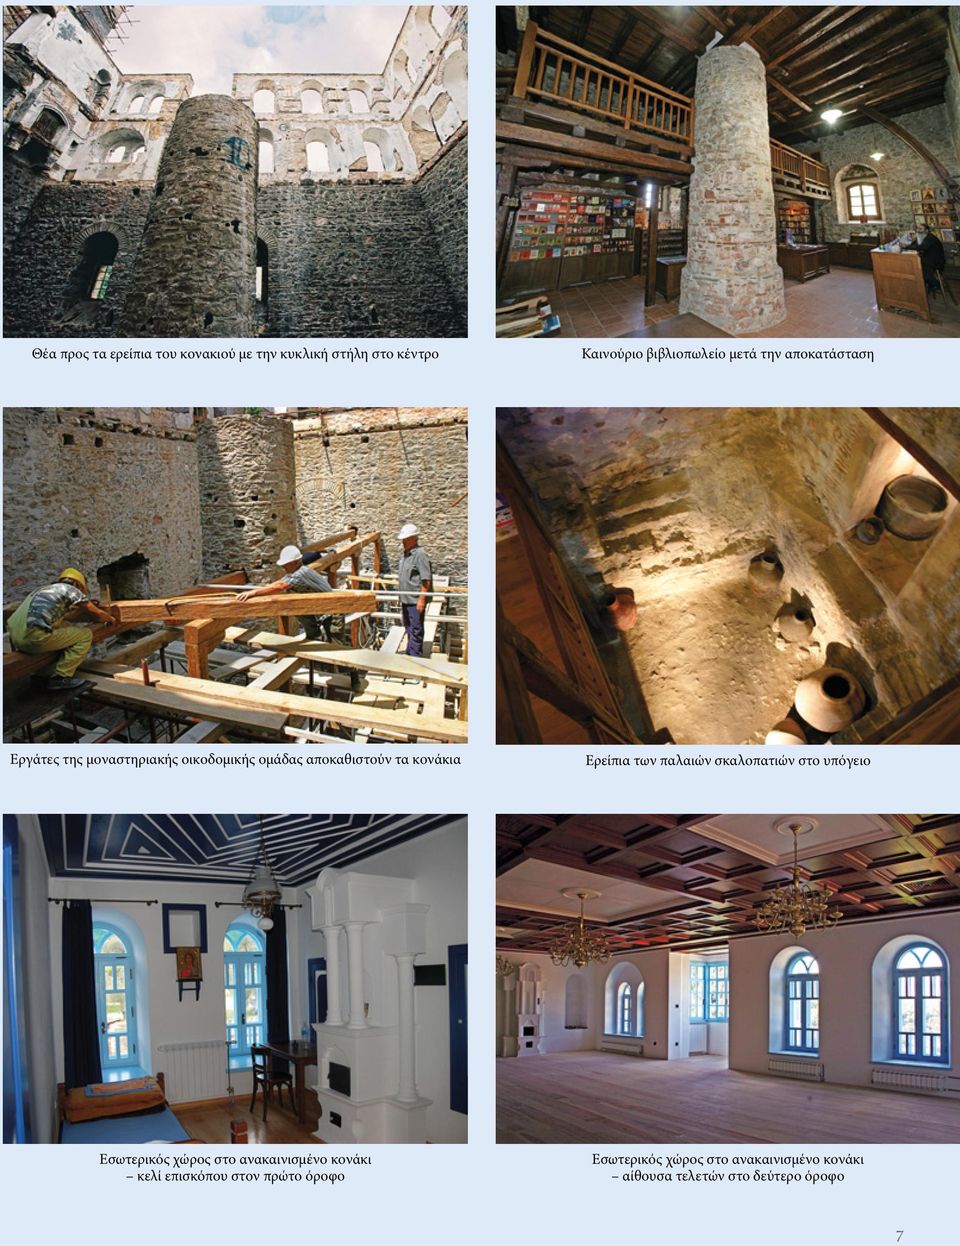 των παλαιών σκαλοπατιών στο υπόγειο Εσωτερικός χώρος στο ανακαινισμένο κονάκι κελί επισκόπου